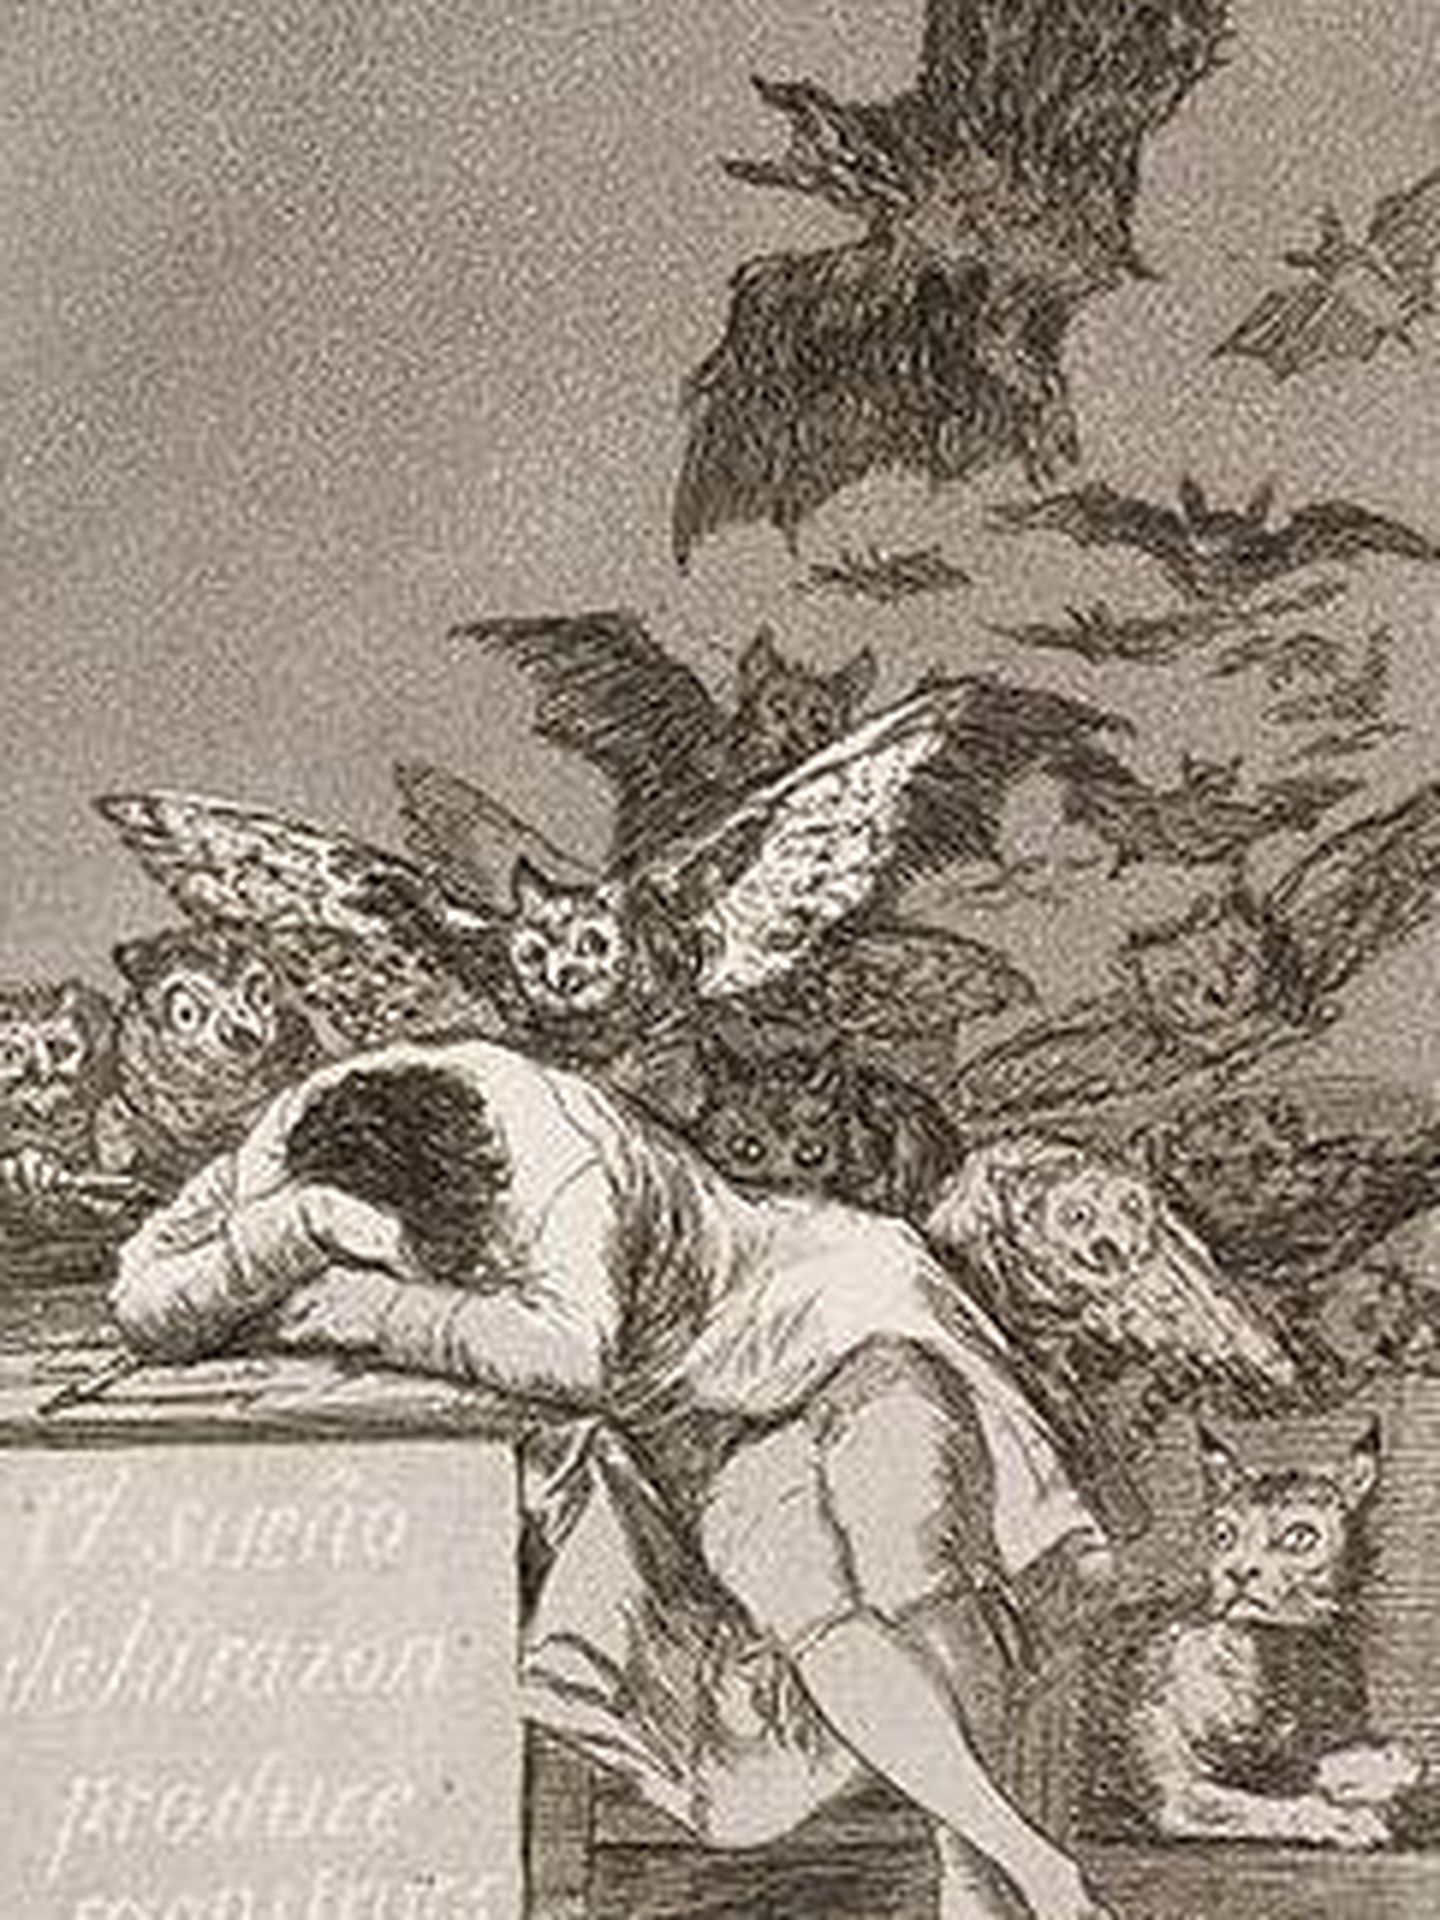 'El sueño de la razón produce monstruos'. Francisco de Goya.